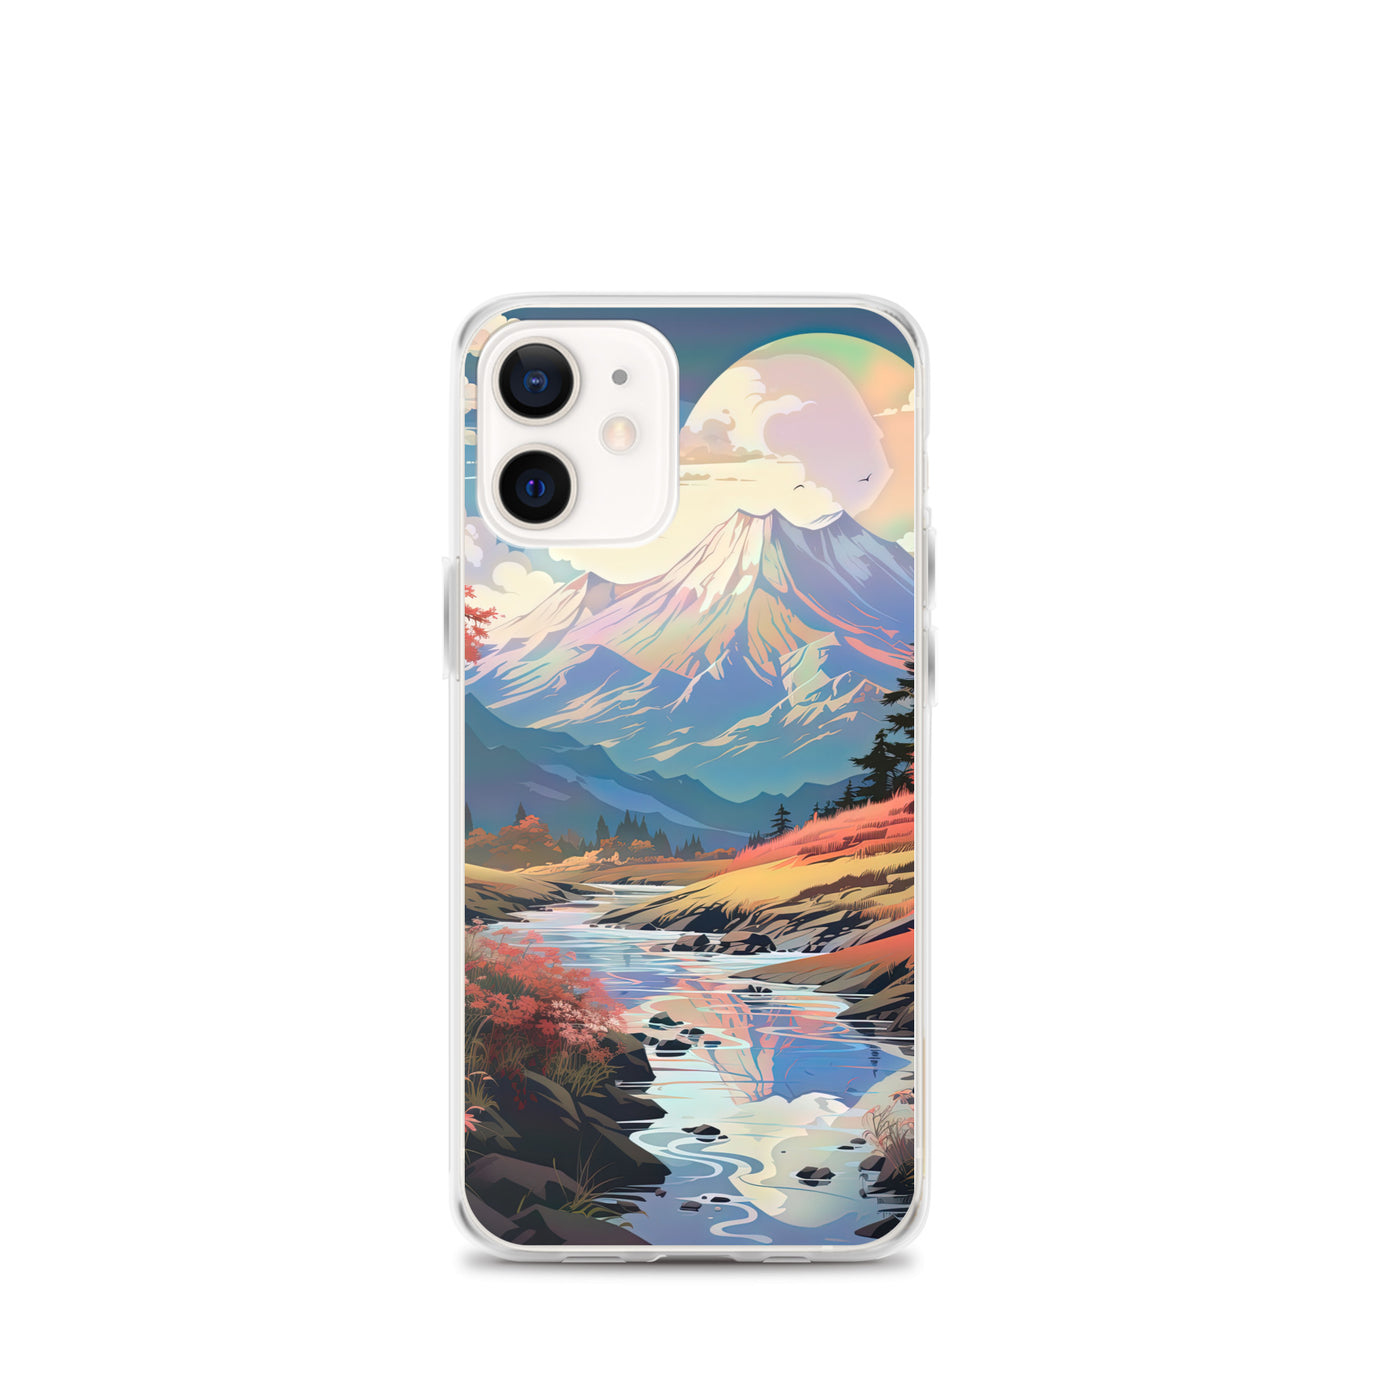 Berge. Fluss und Blumen - Malerei - iPhone Schutzhülle (durchsichtig) berge xxx iPhone 12 mini